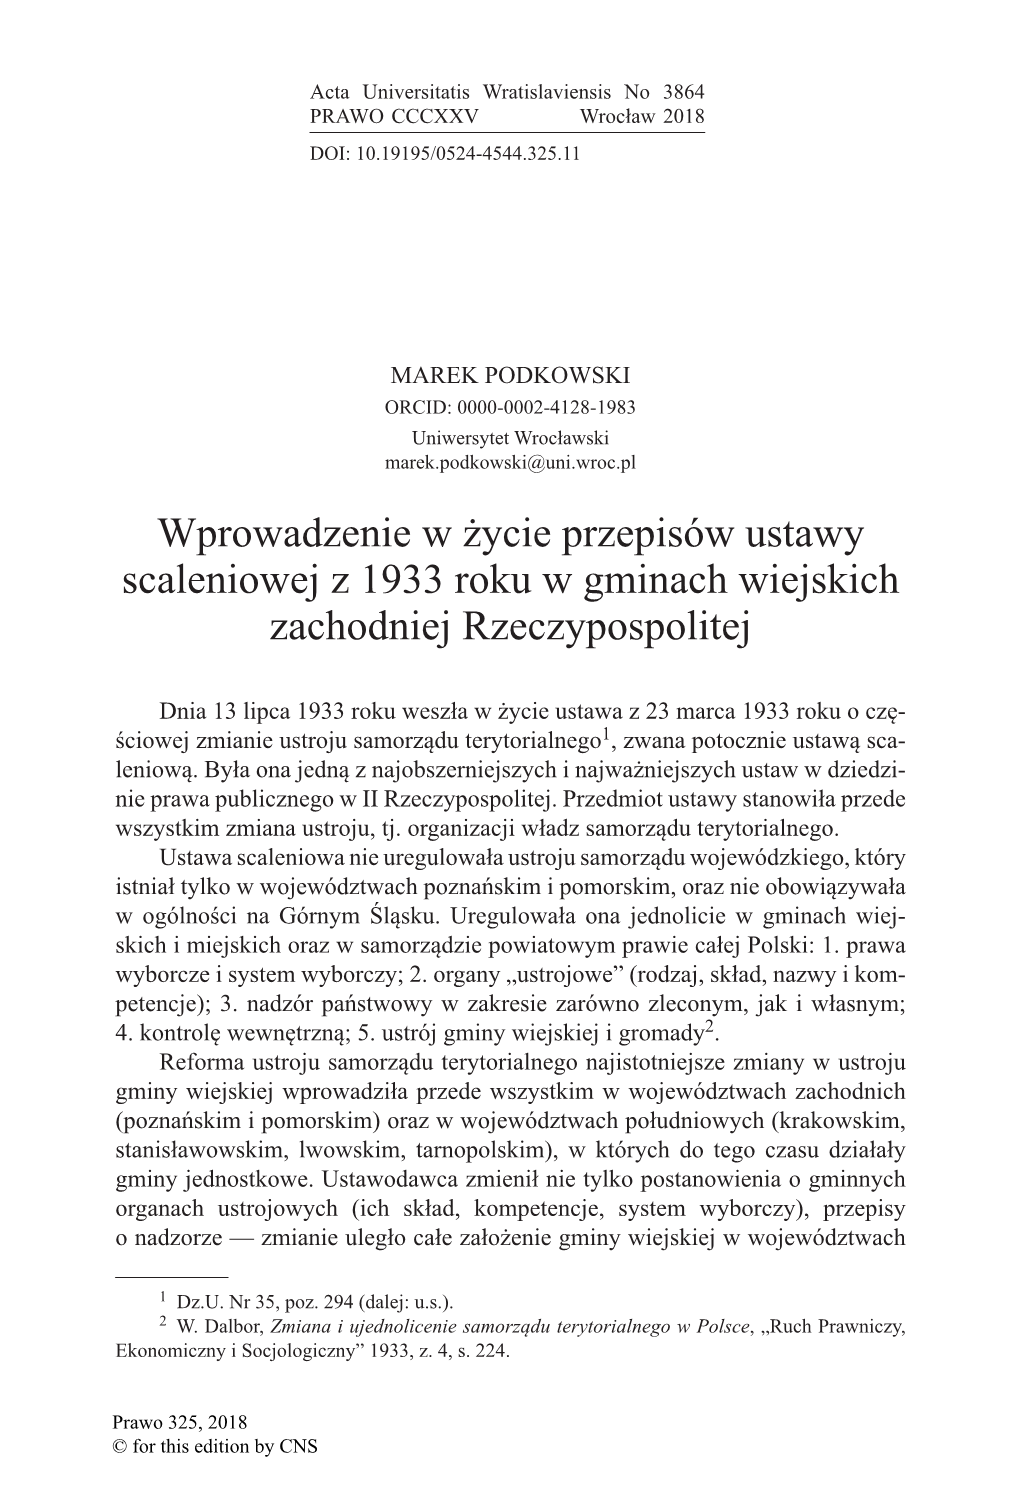 Wprowadzenie W Życie Przepisów Ustawy Scaleniowej Z 1933 Roku W Gminach Wiejskich Zachodniej Rzeczypospolitej